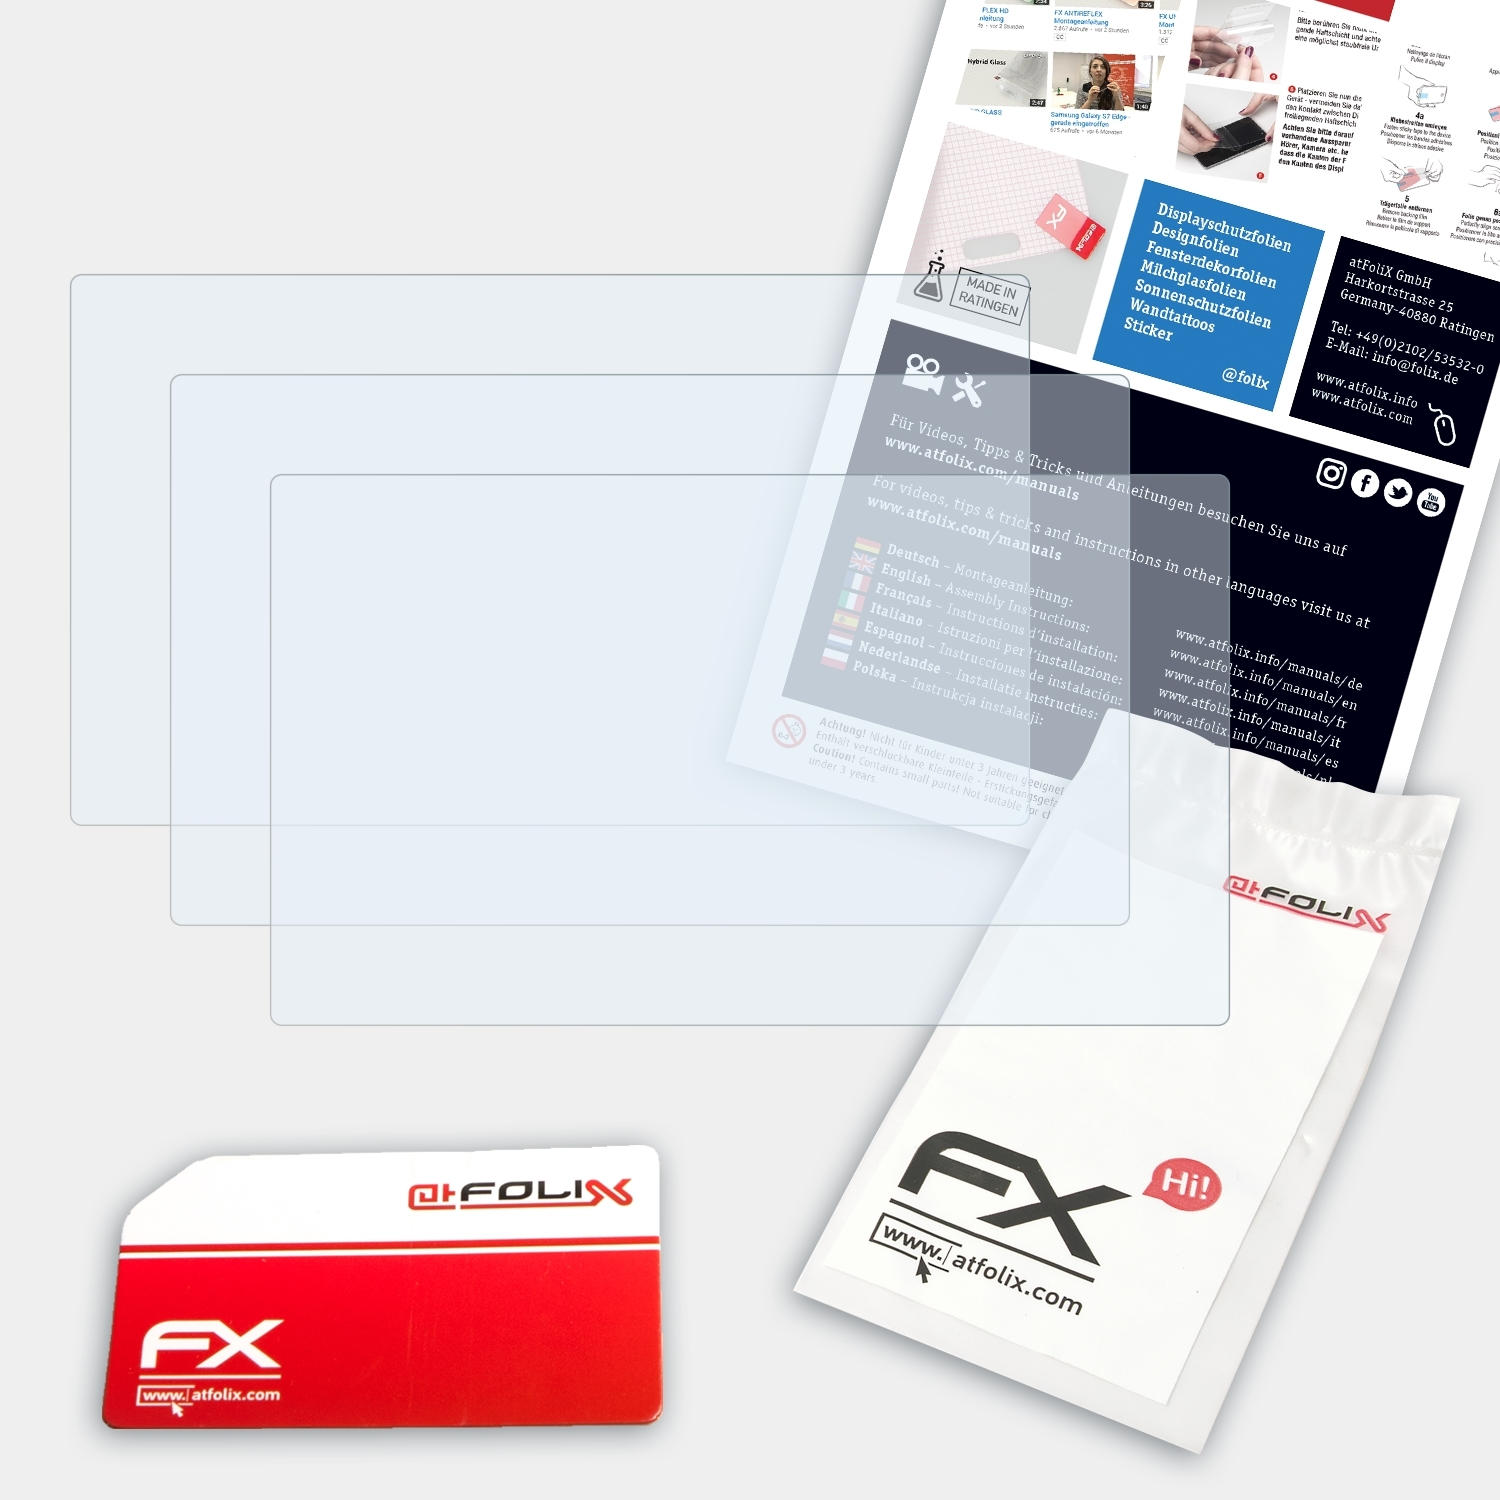 ATFOLIX 3x Displayschutz(für DSC-T90) Sony FX-Clear